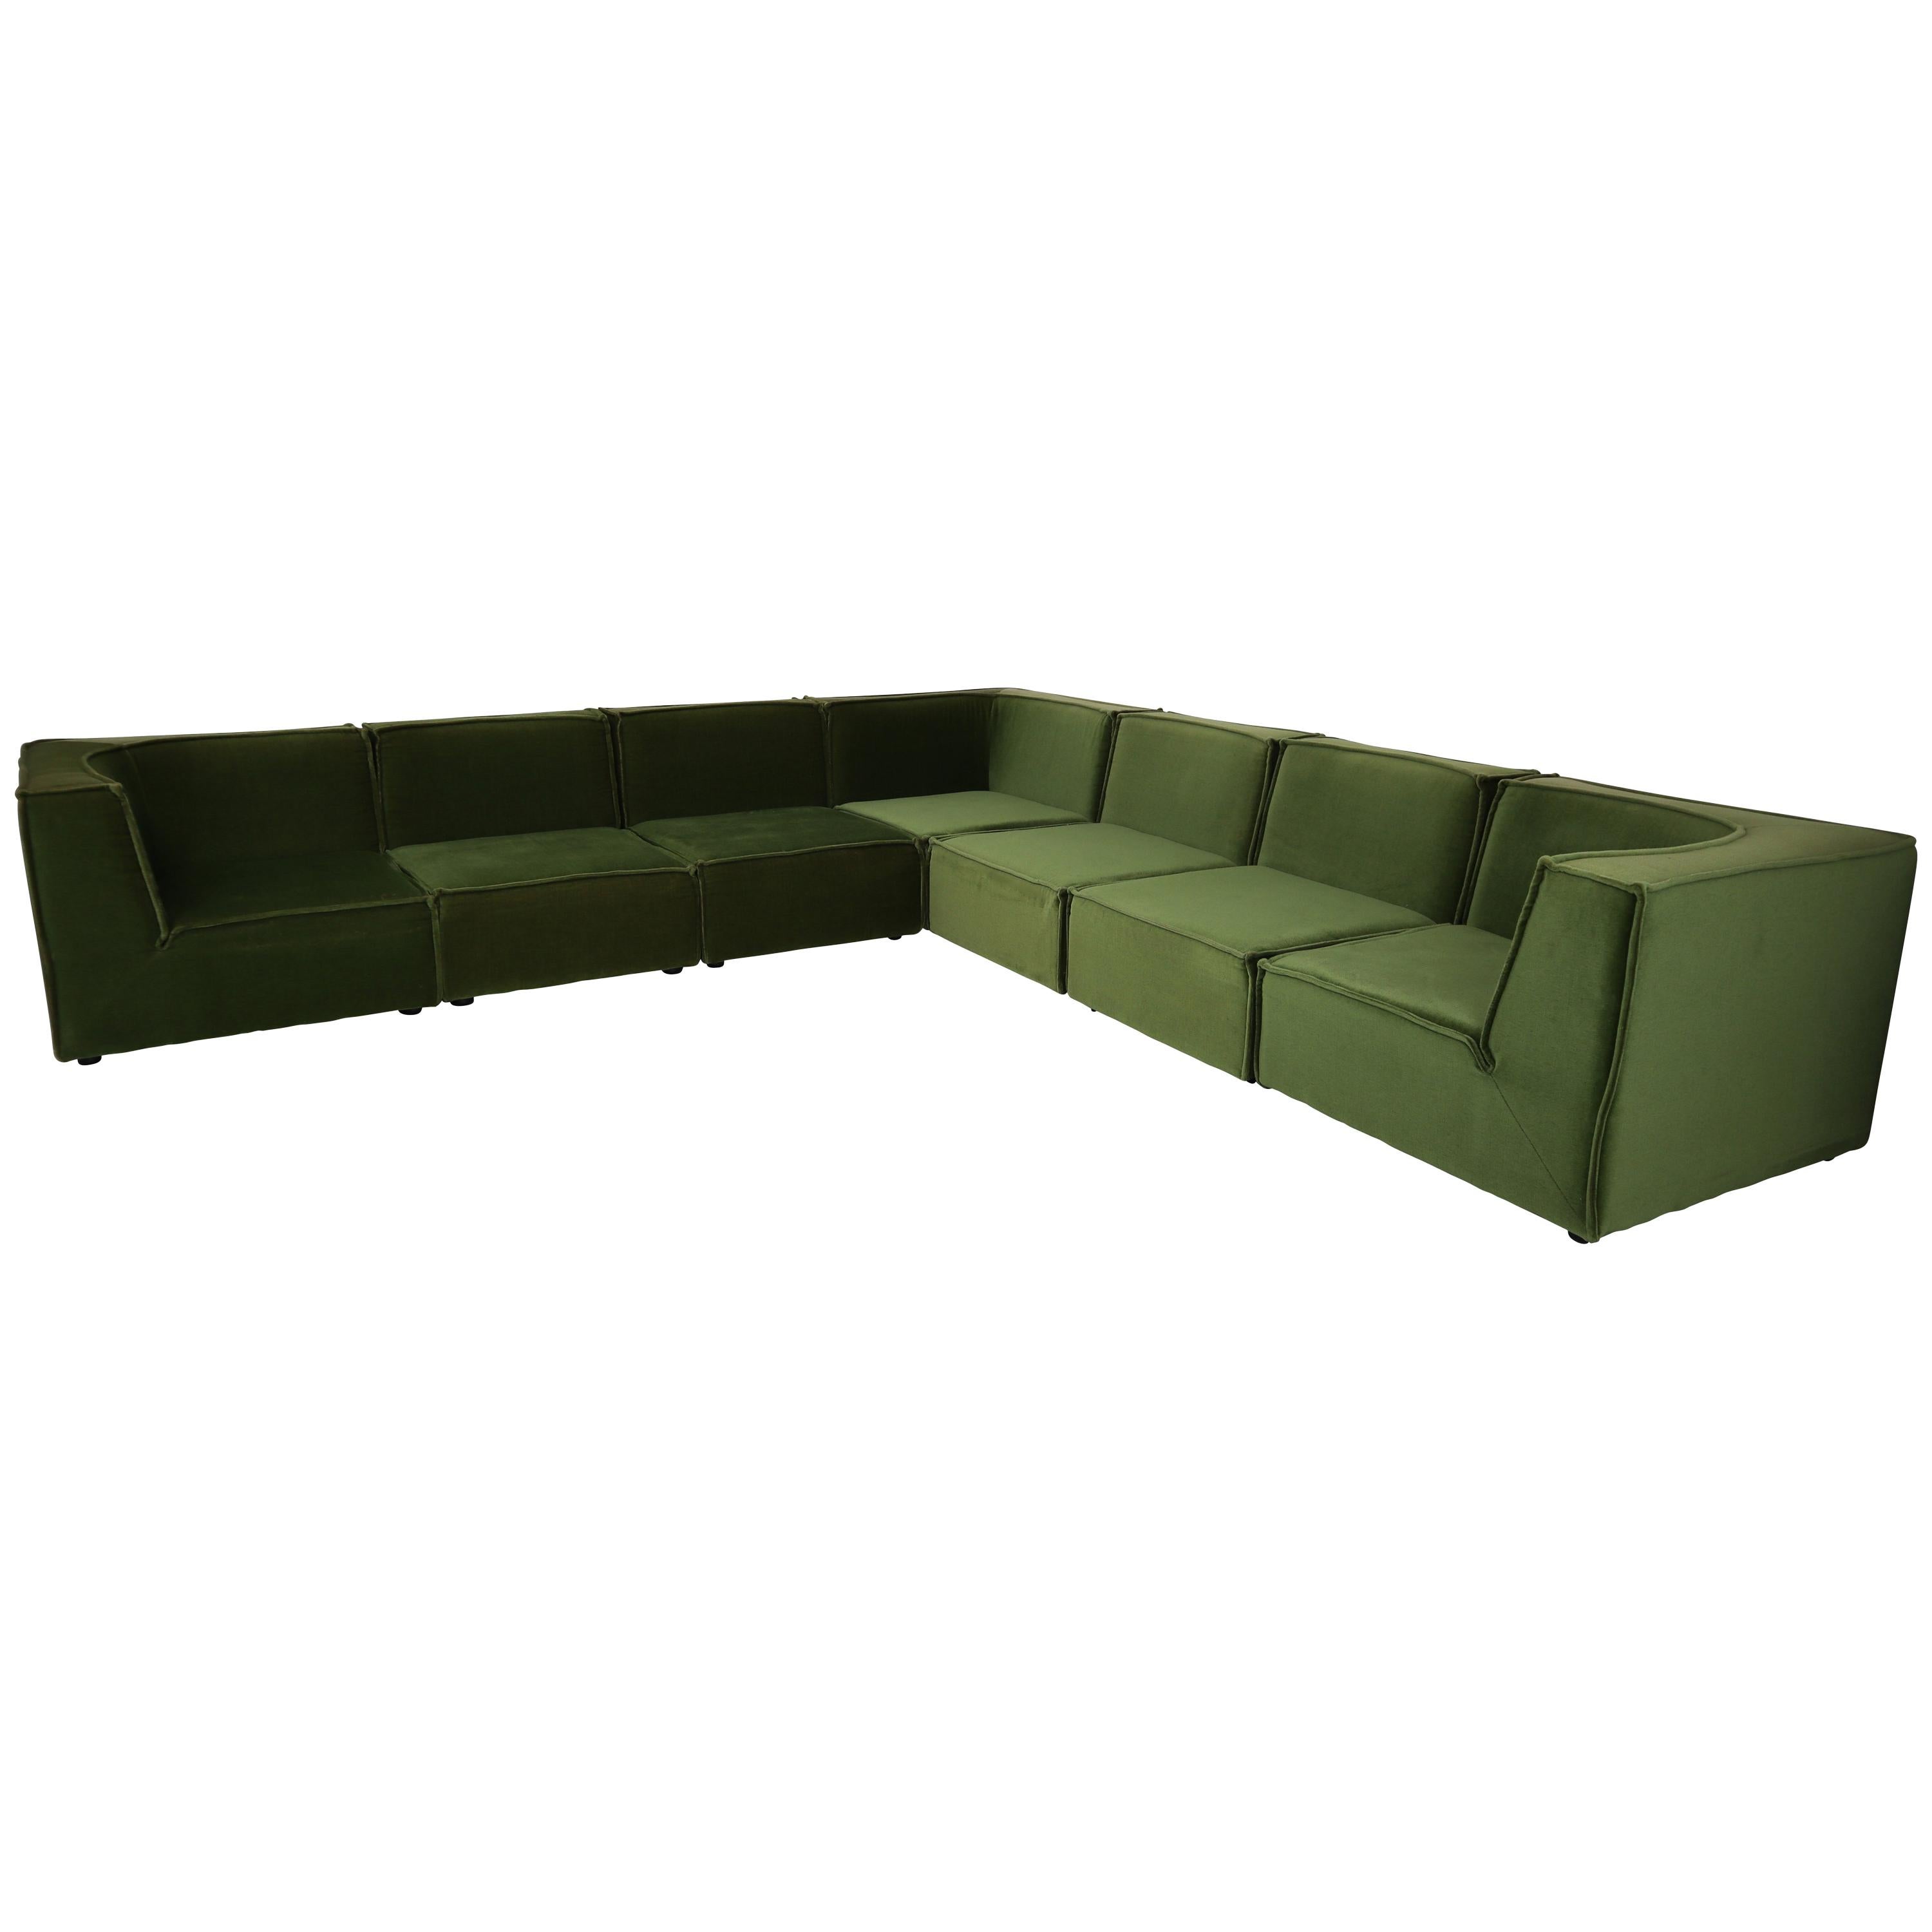 1975 German Green Velvet Sectional Sofa